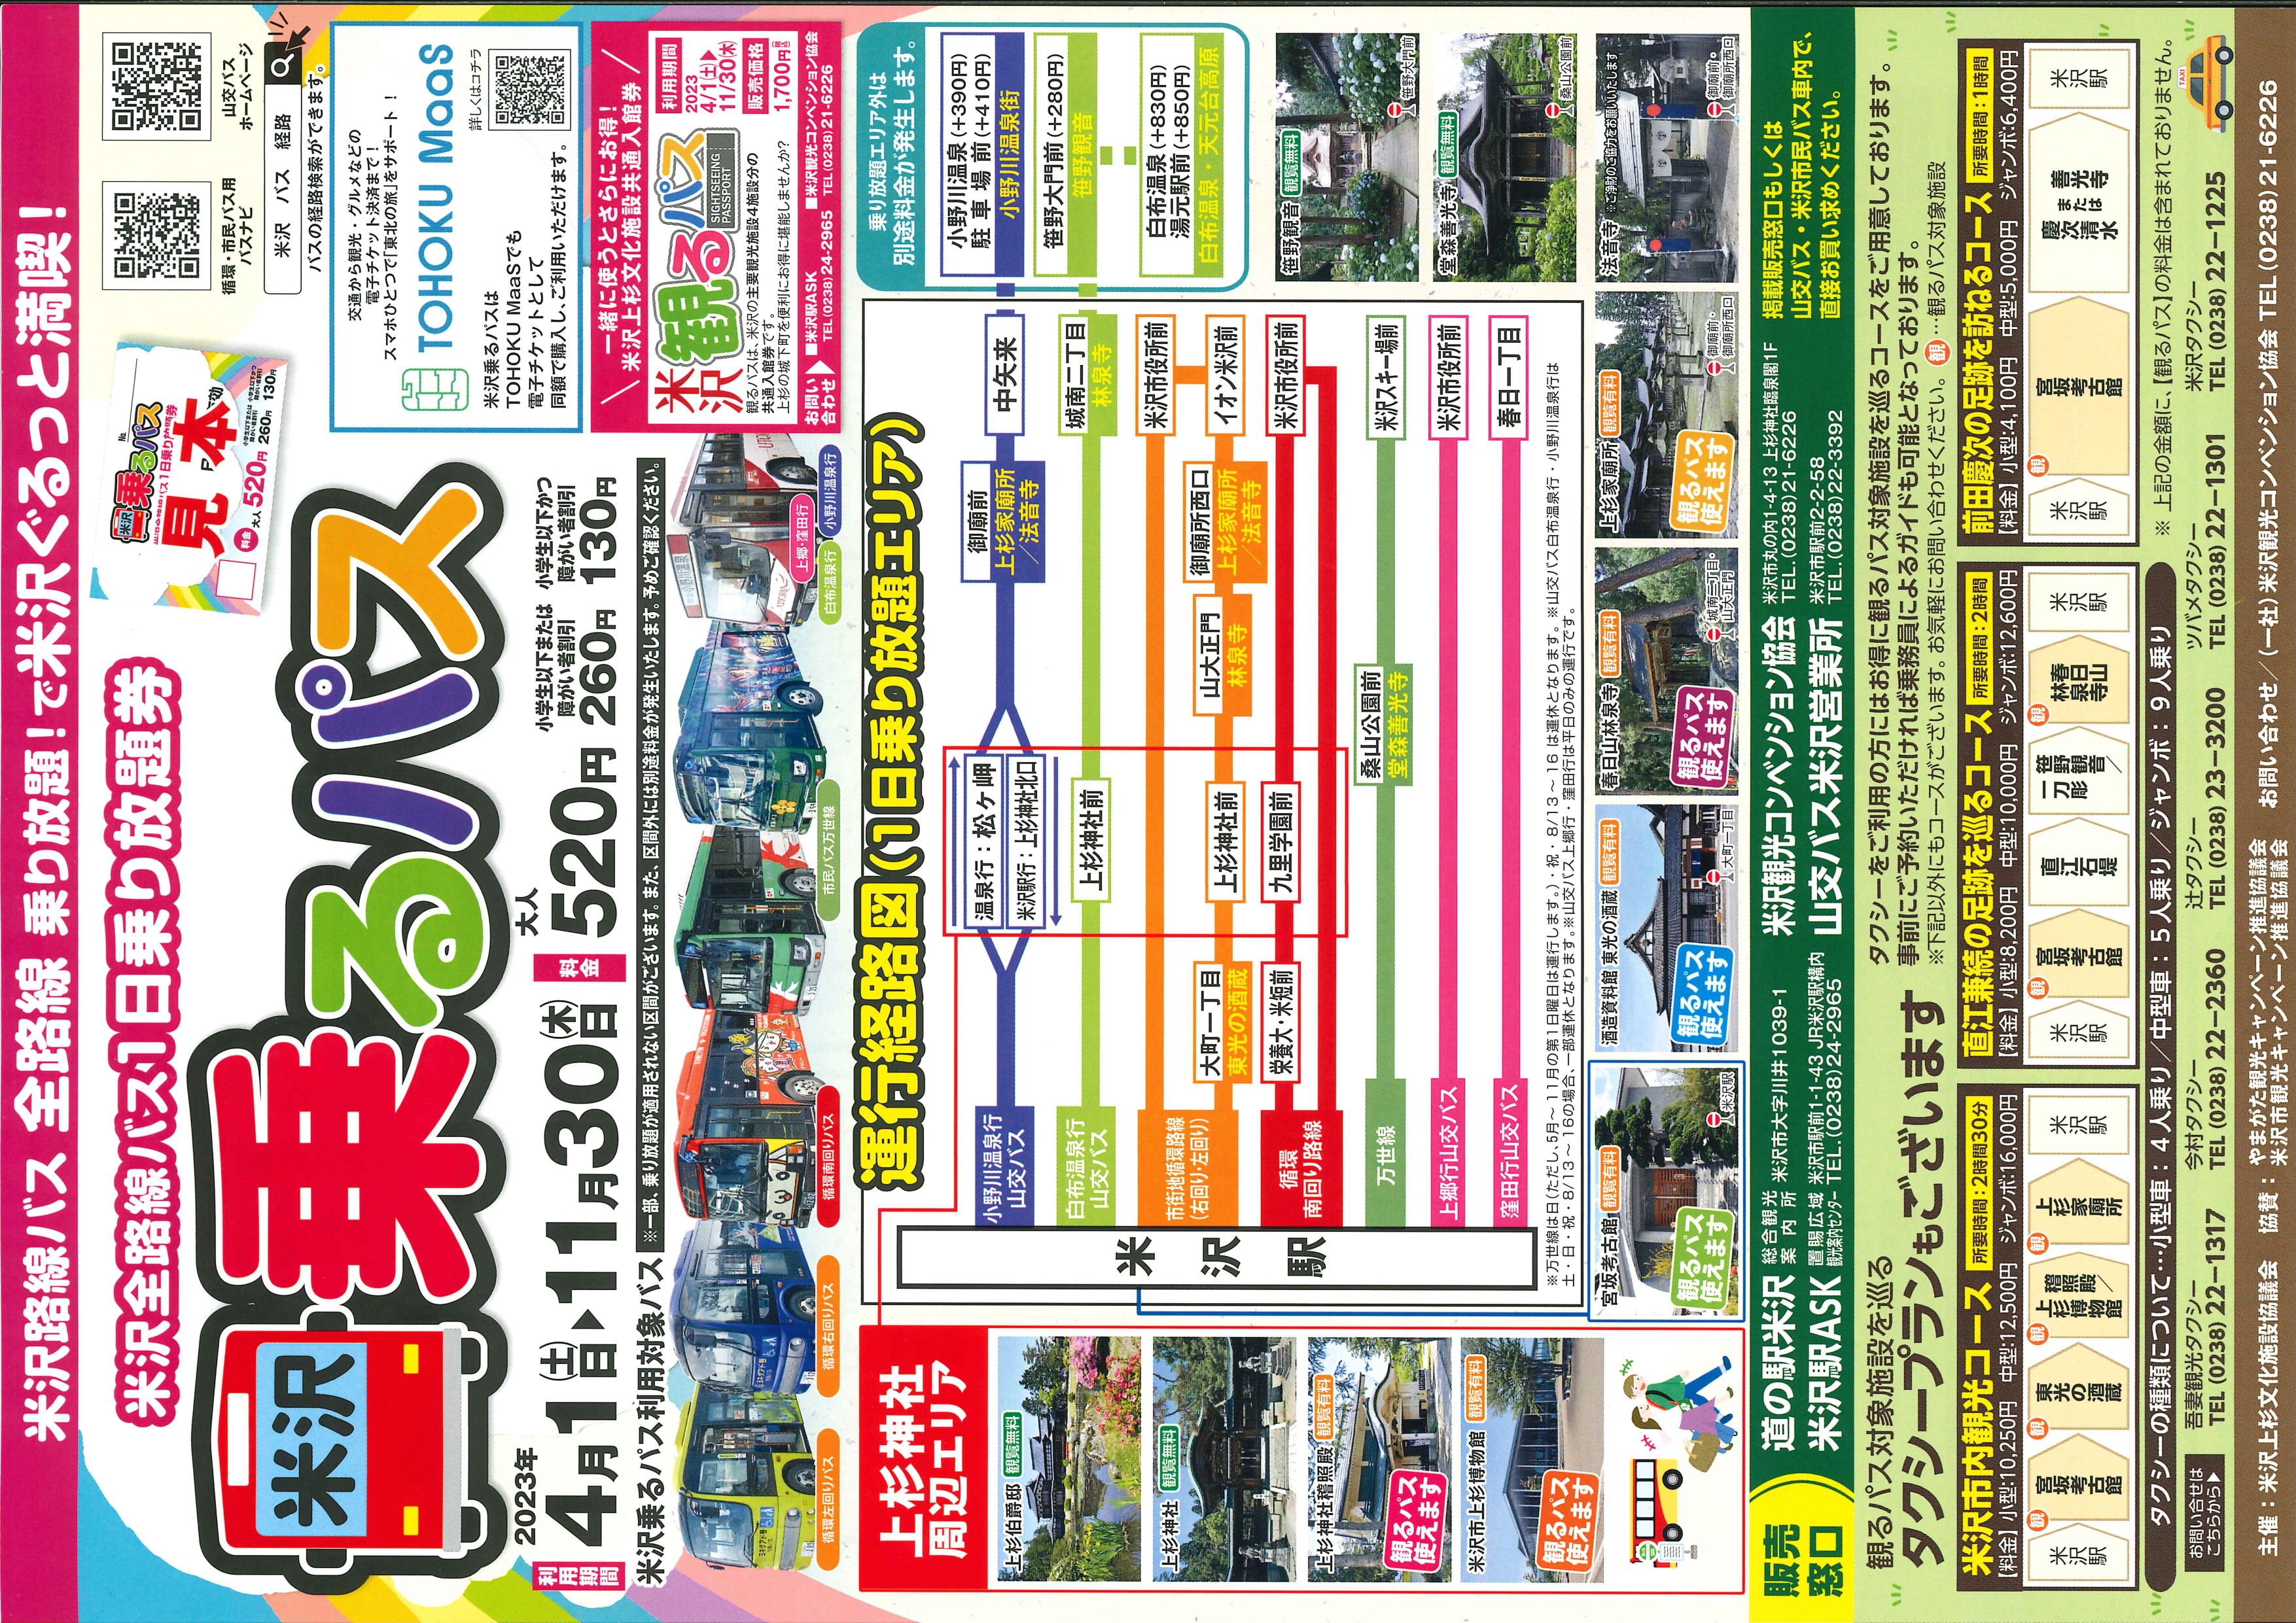 米沢乗るパス（米沢市内全路線バス1日乗り放題券）4月1日より販売！：画像